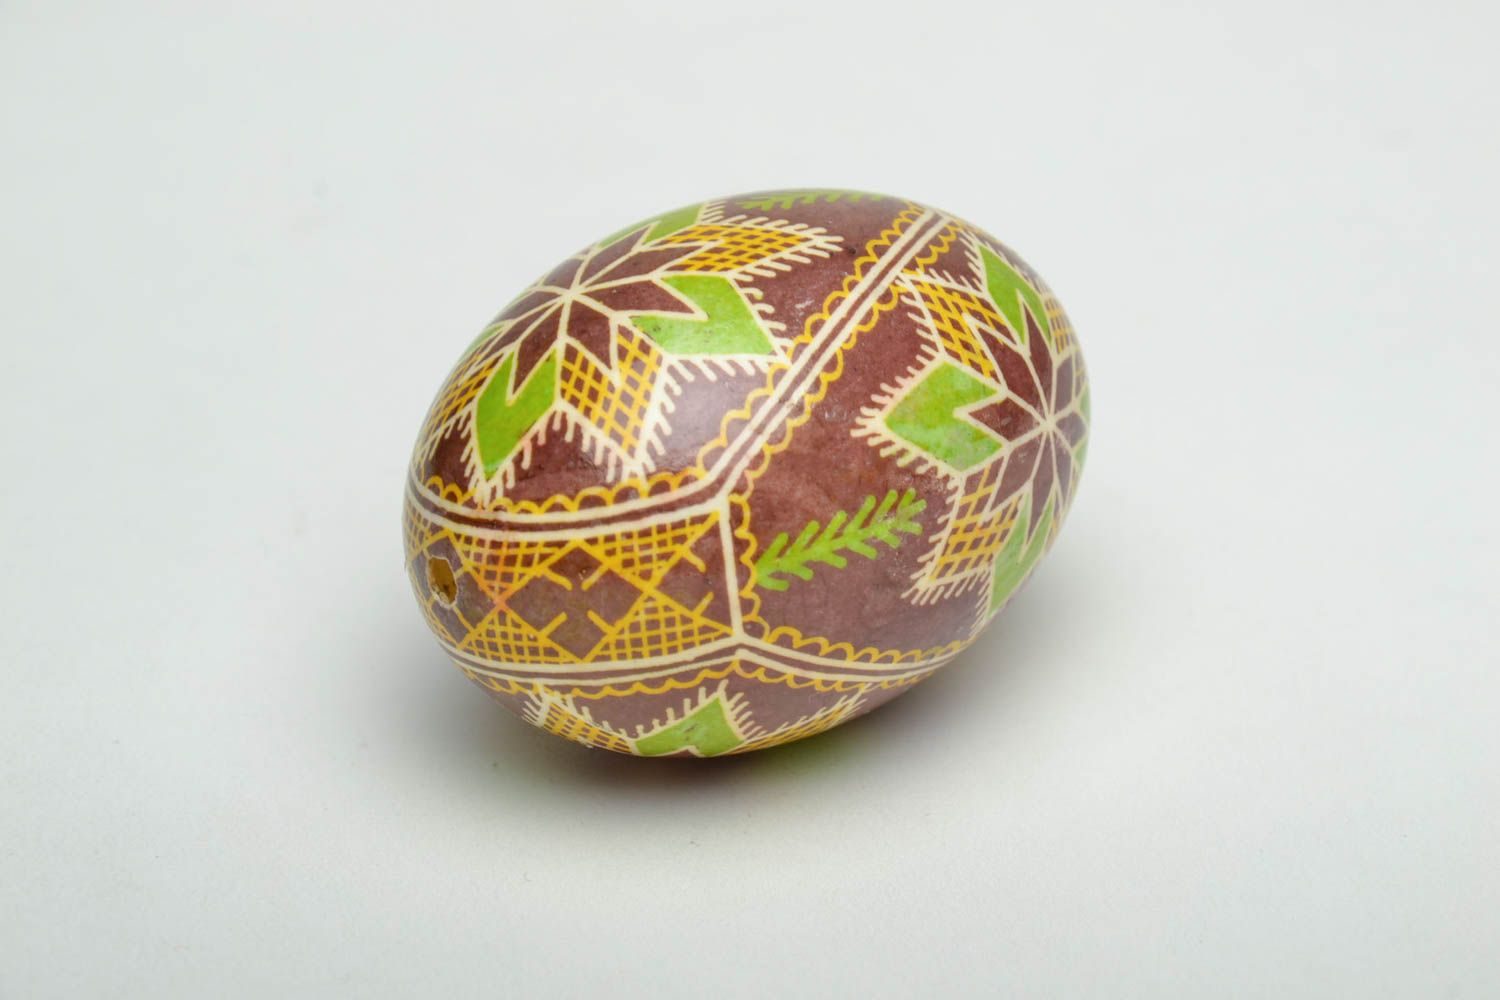 Oeuf de Pâques fait main avec ornements ethniques peints de colorants d'aniline photo 4